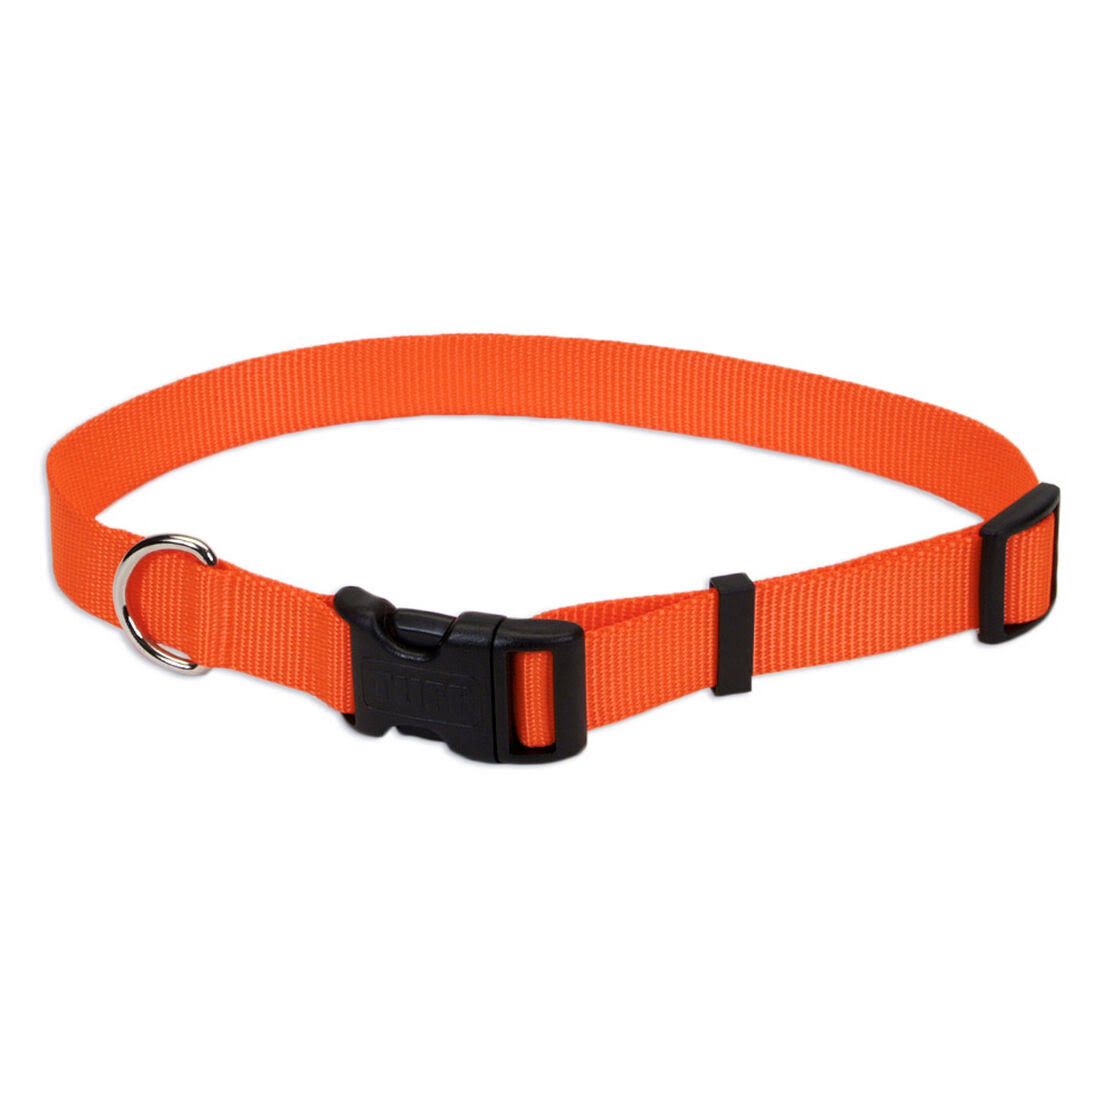 Coastal Pet Products Nylon Adjustable Dog Collar - Orange